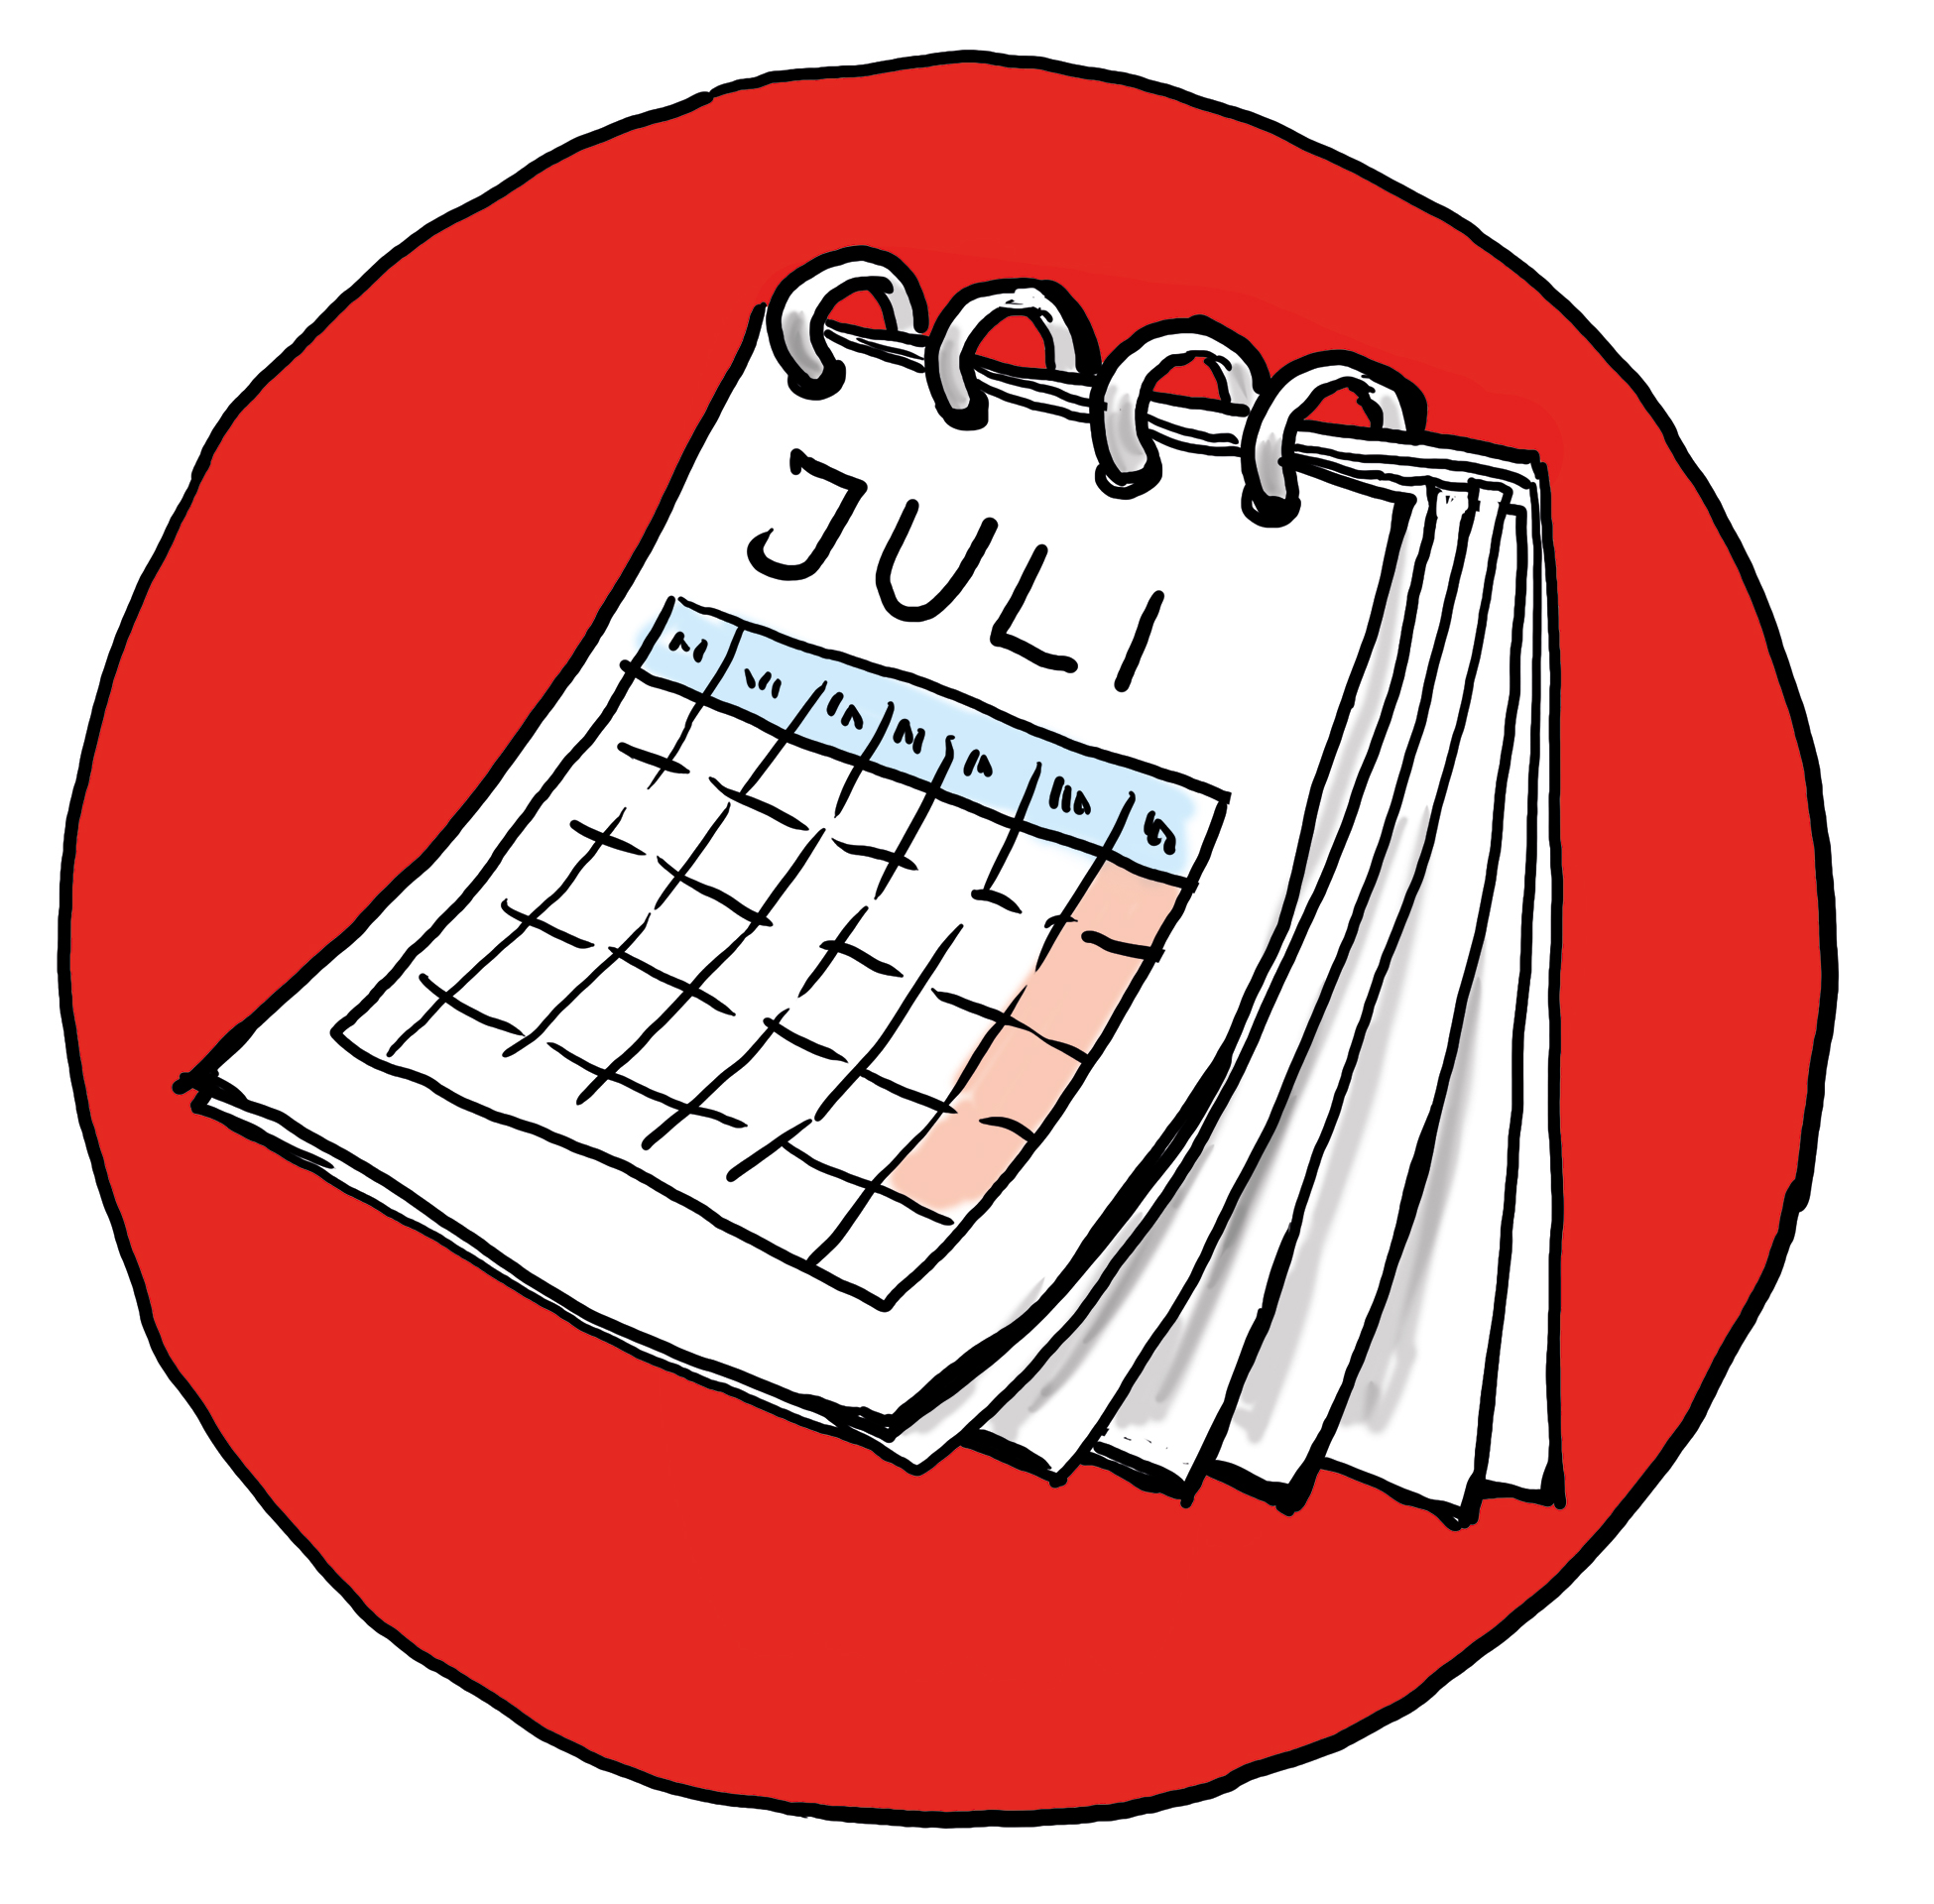 Ein Kalender auf einem roten Kreis - Symbol für Termin